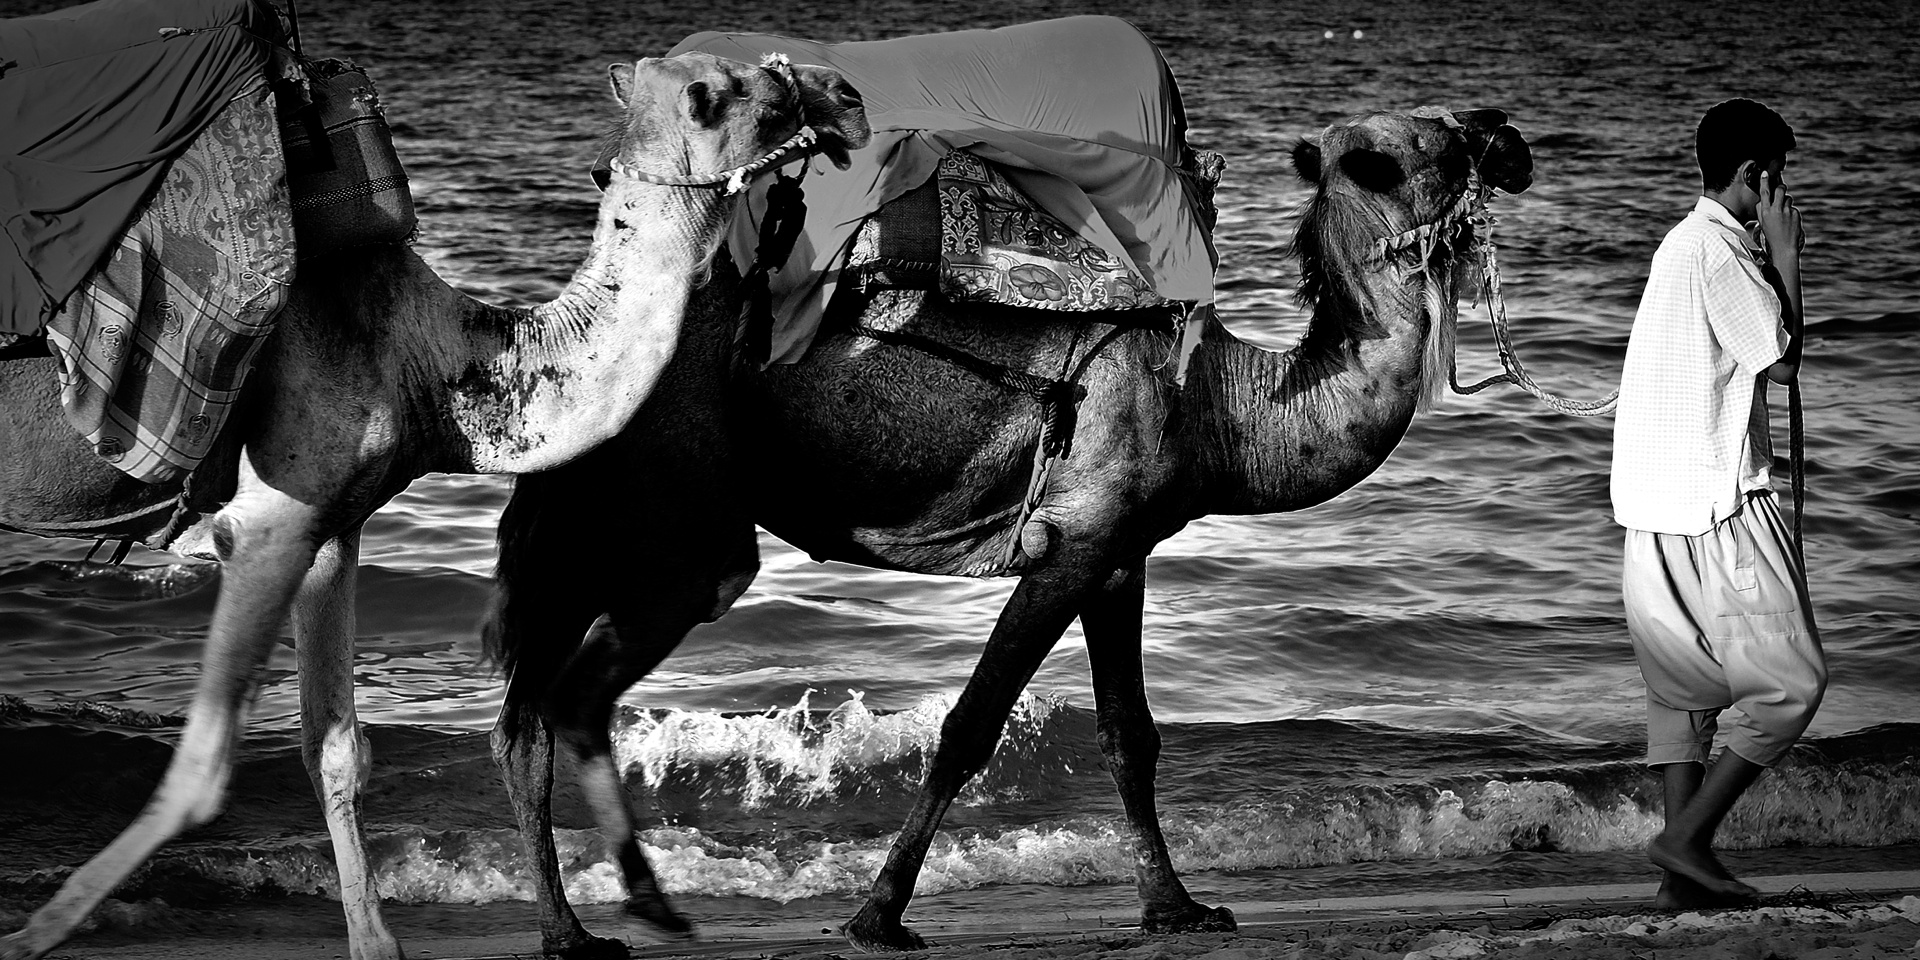 Nei miei occhi_dal mare al deserto tunisino